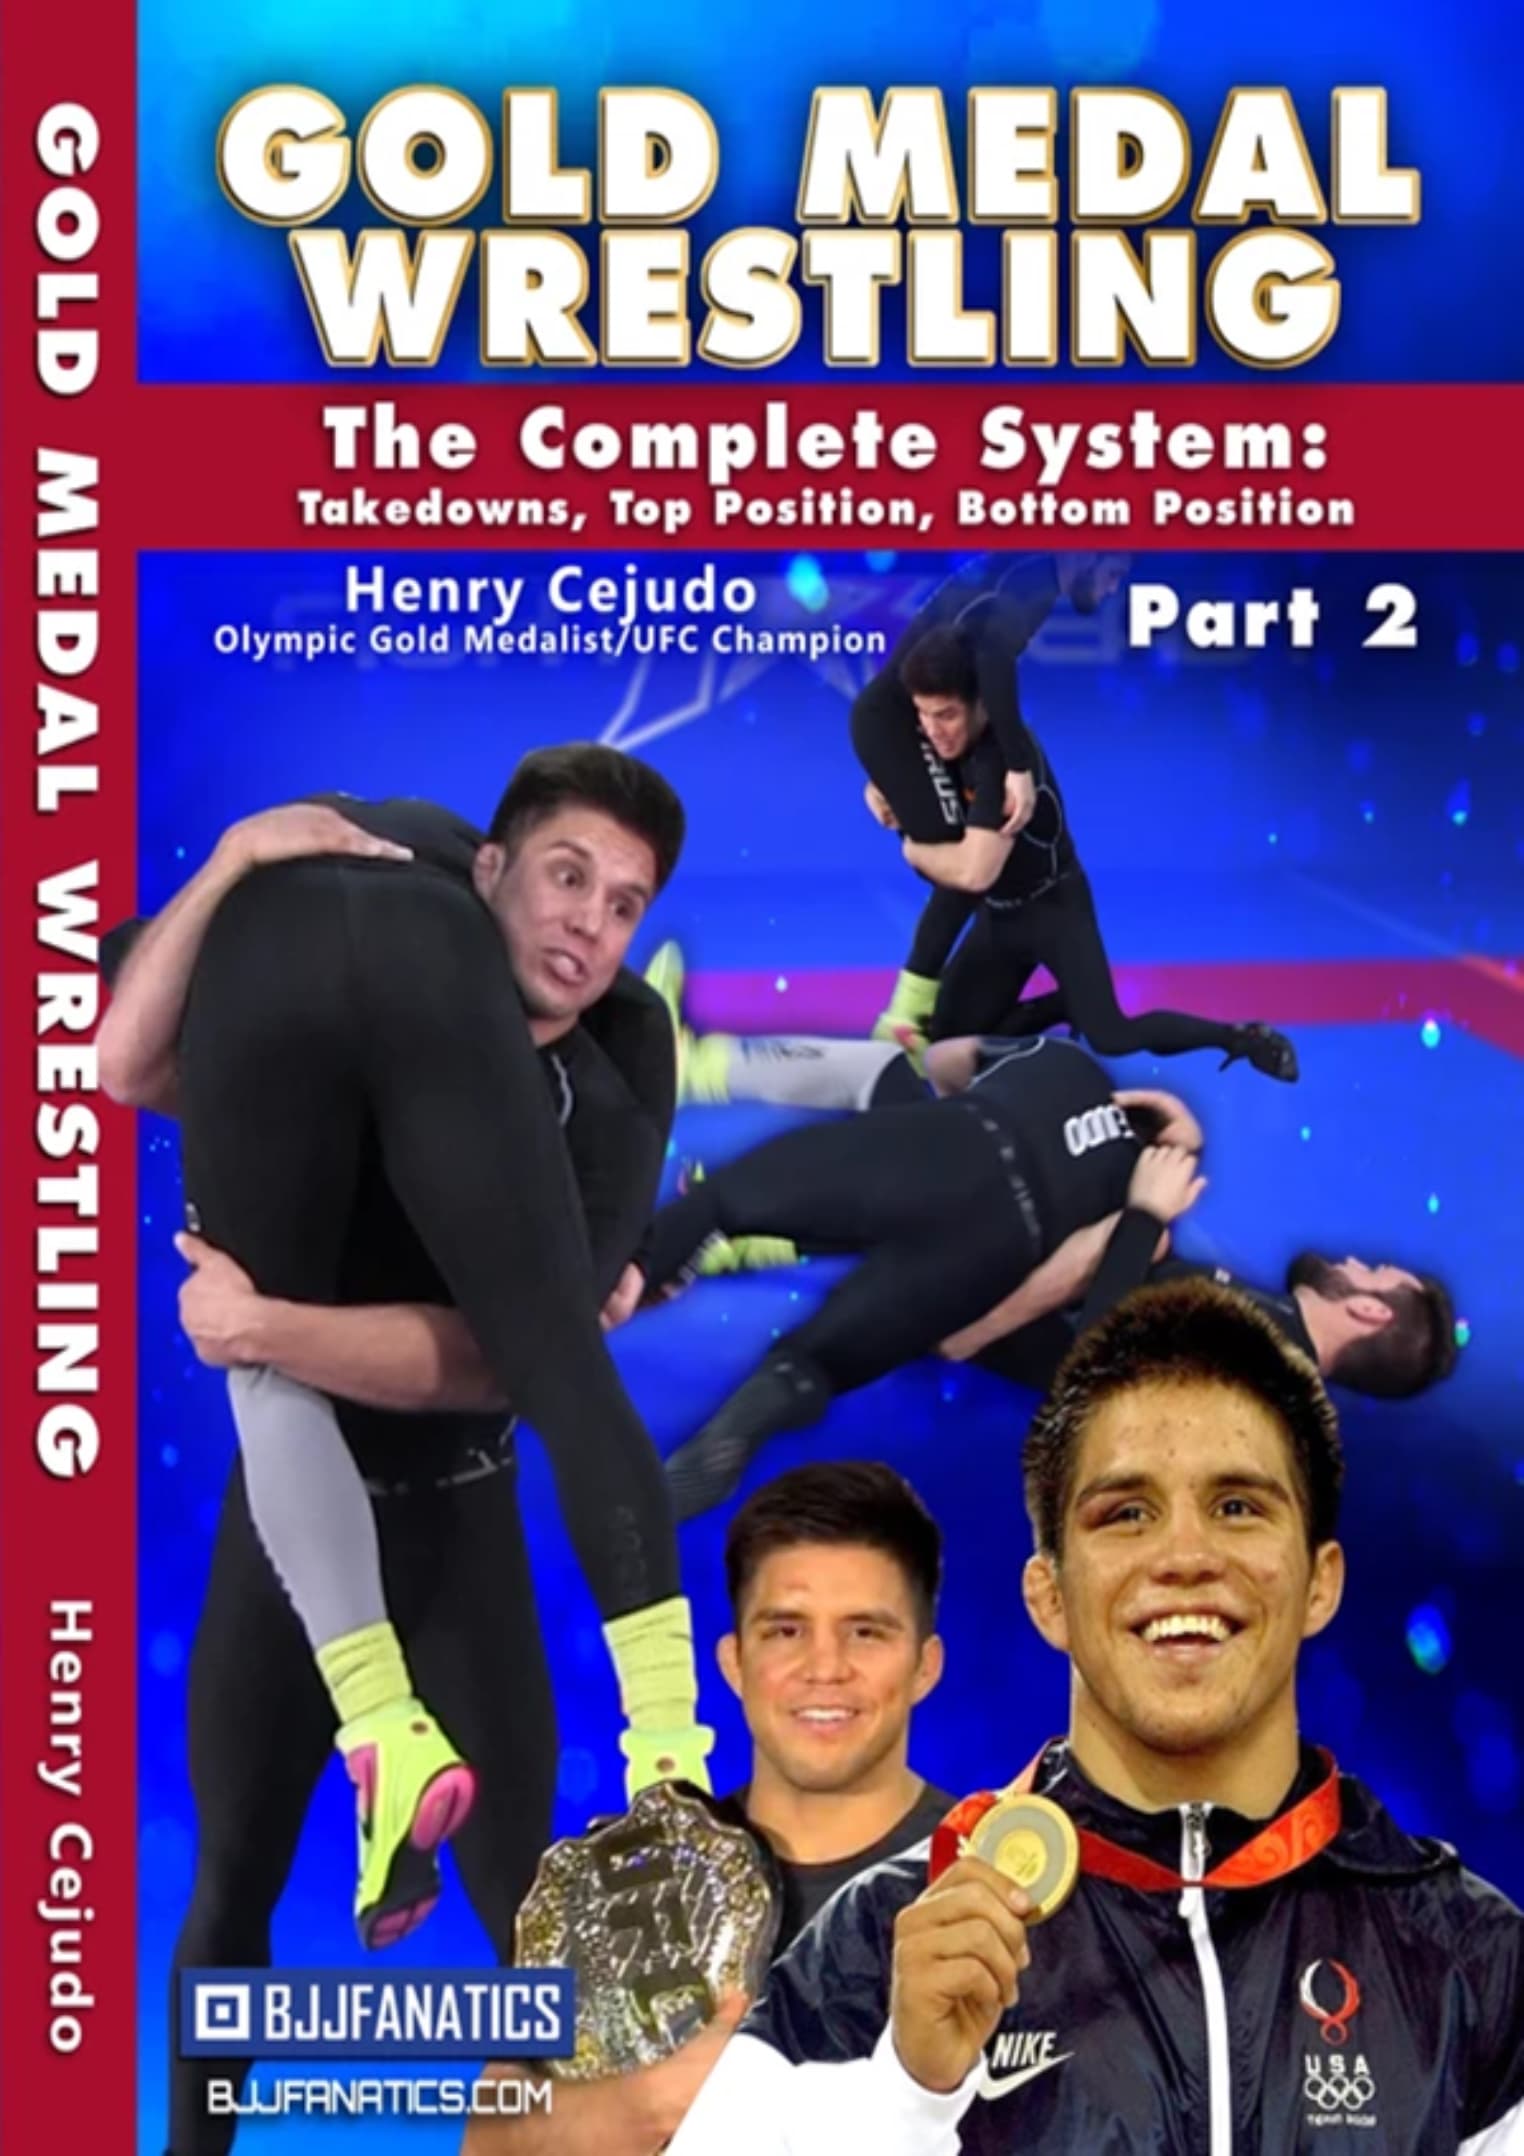 Gold Medal Wrestling By Henry Cejudo